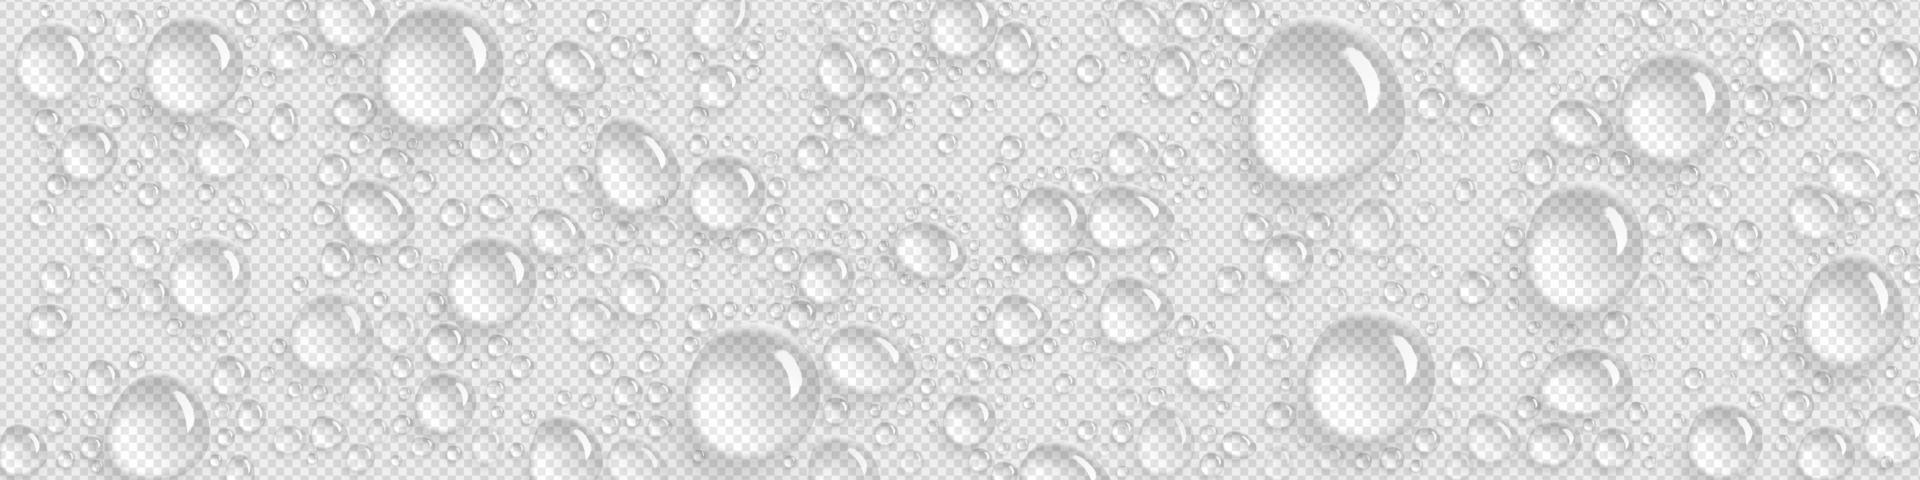 gotas de água pura em fundo transparente vetor